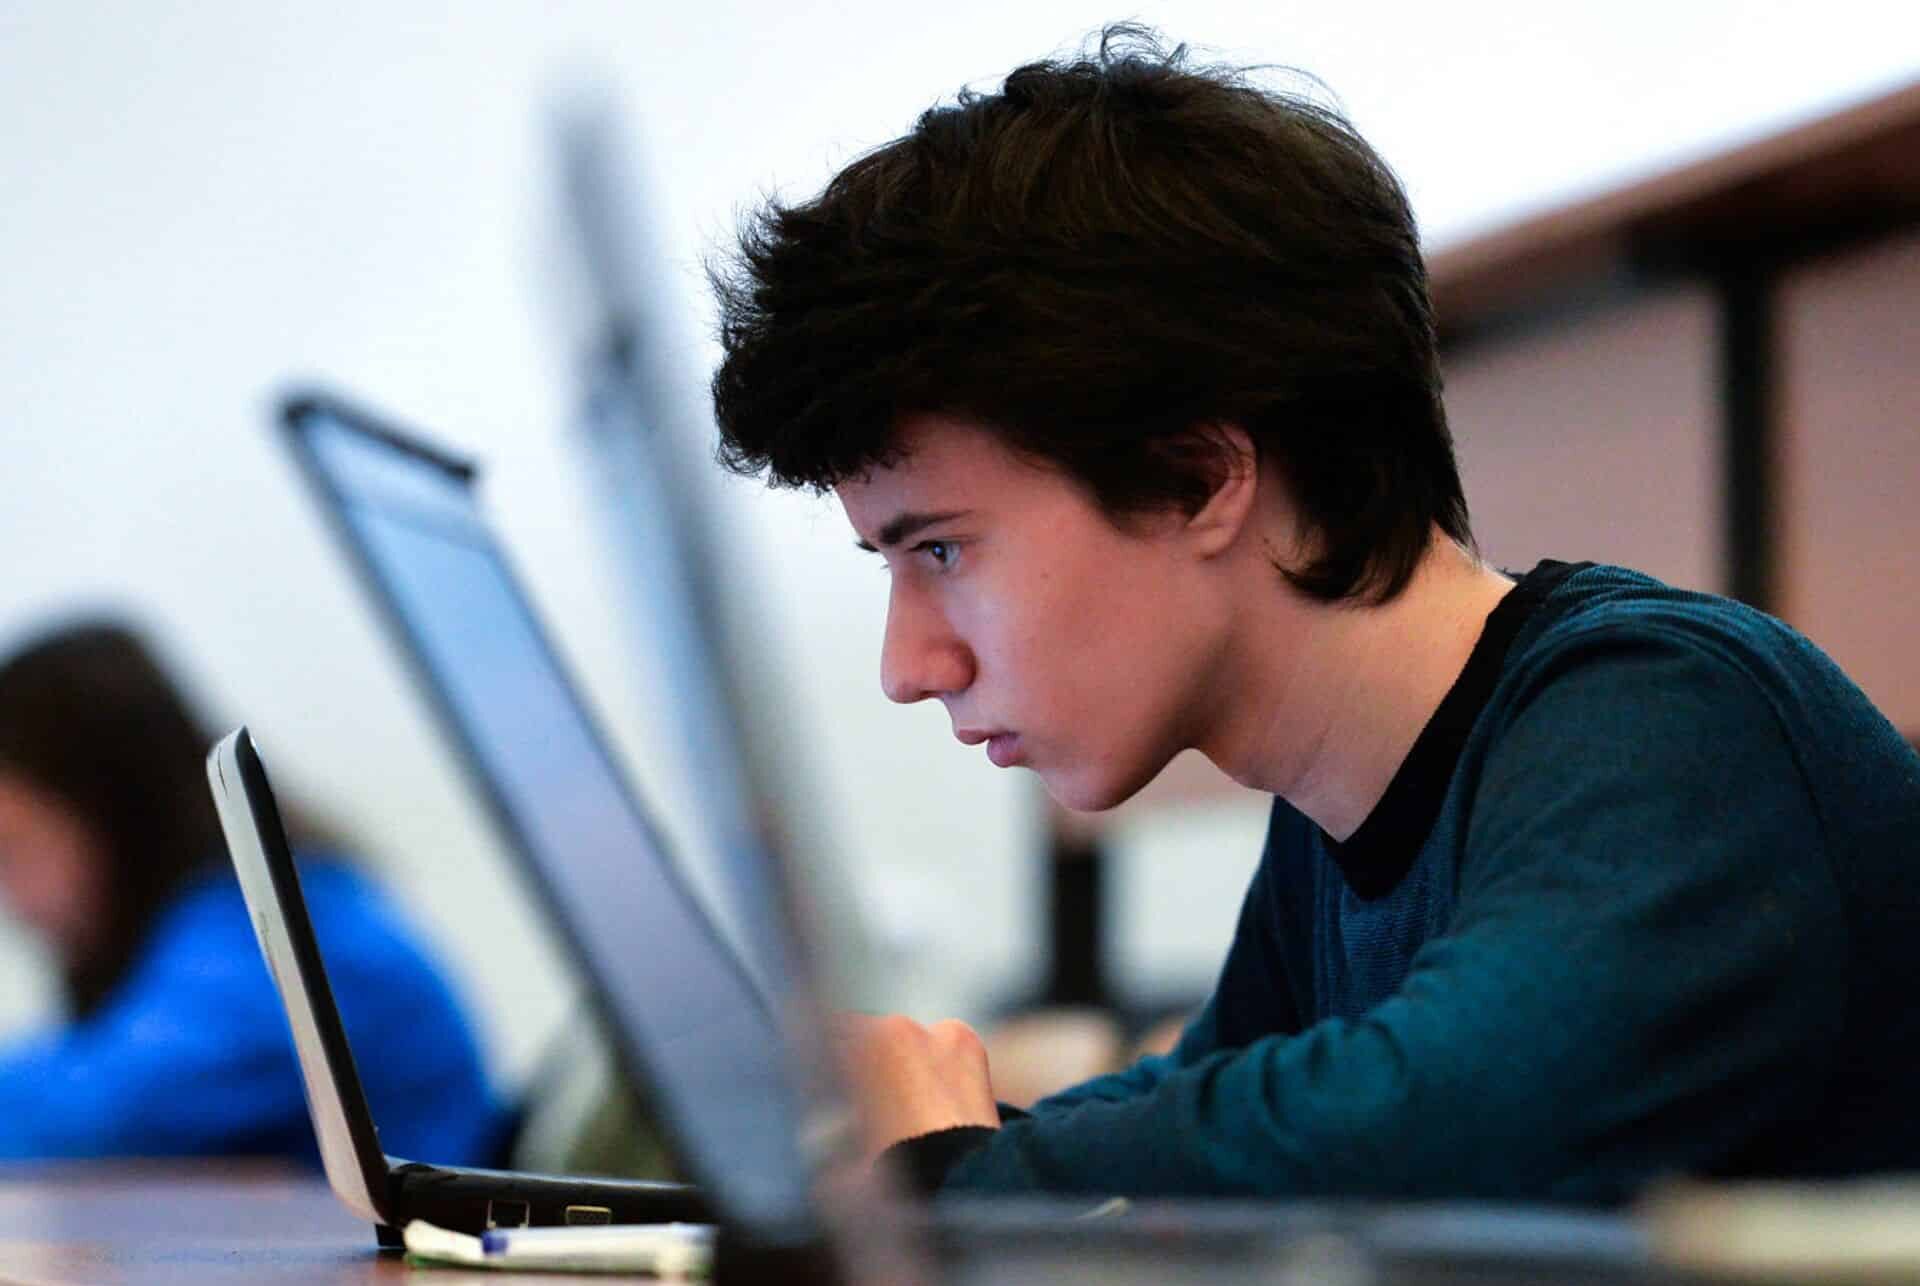 Пол подростка. Школьник за компом. Подросток за компьютером. Ученик за компьютером. Подросток и компьютер.